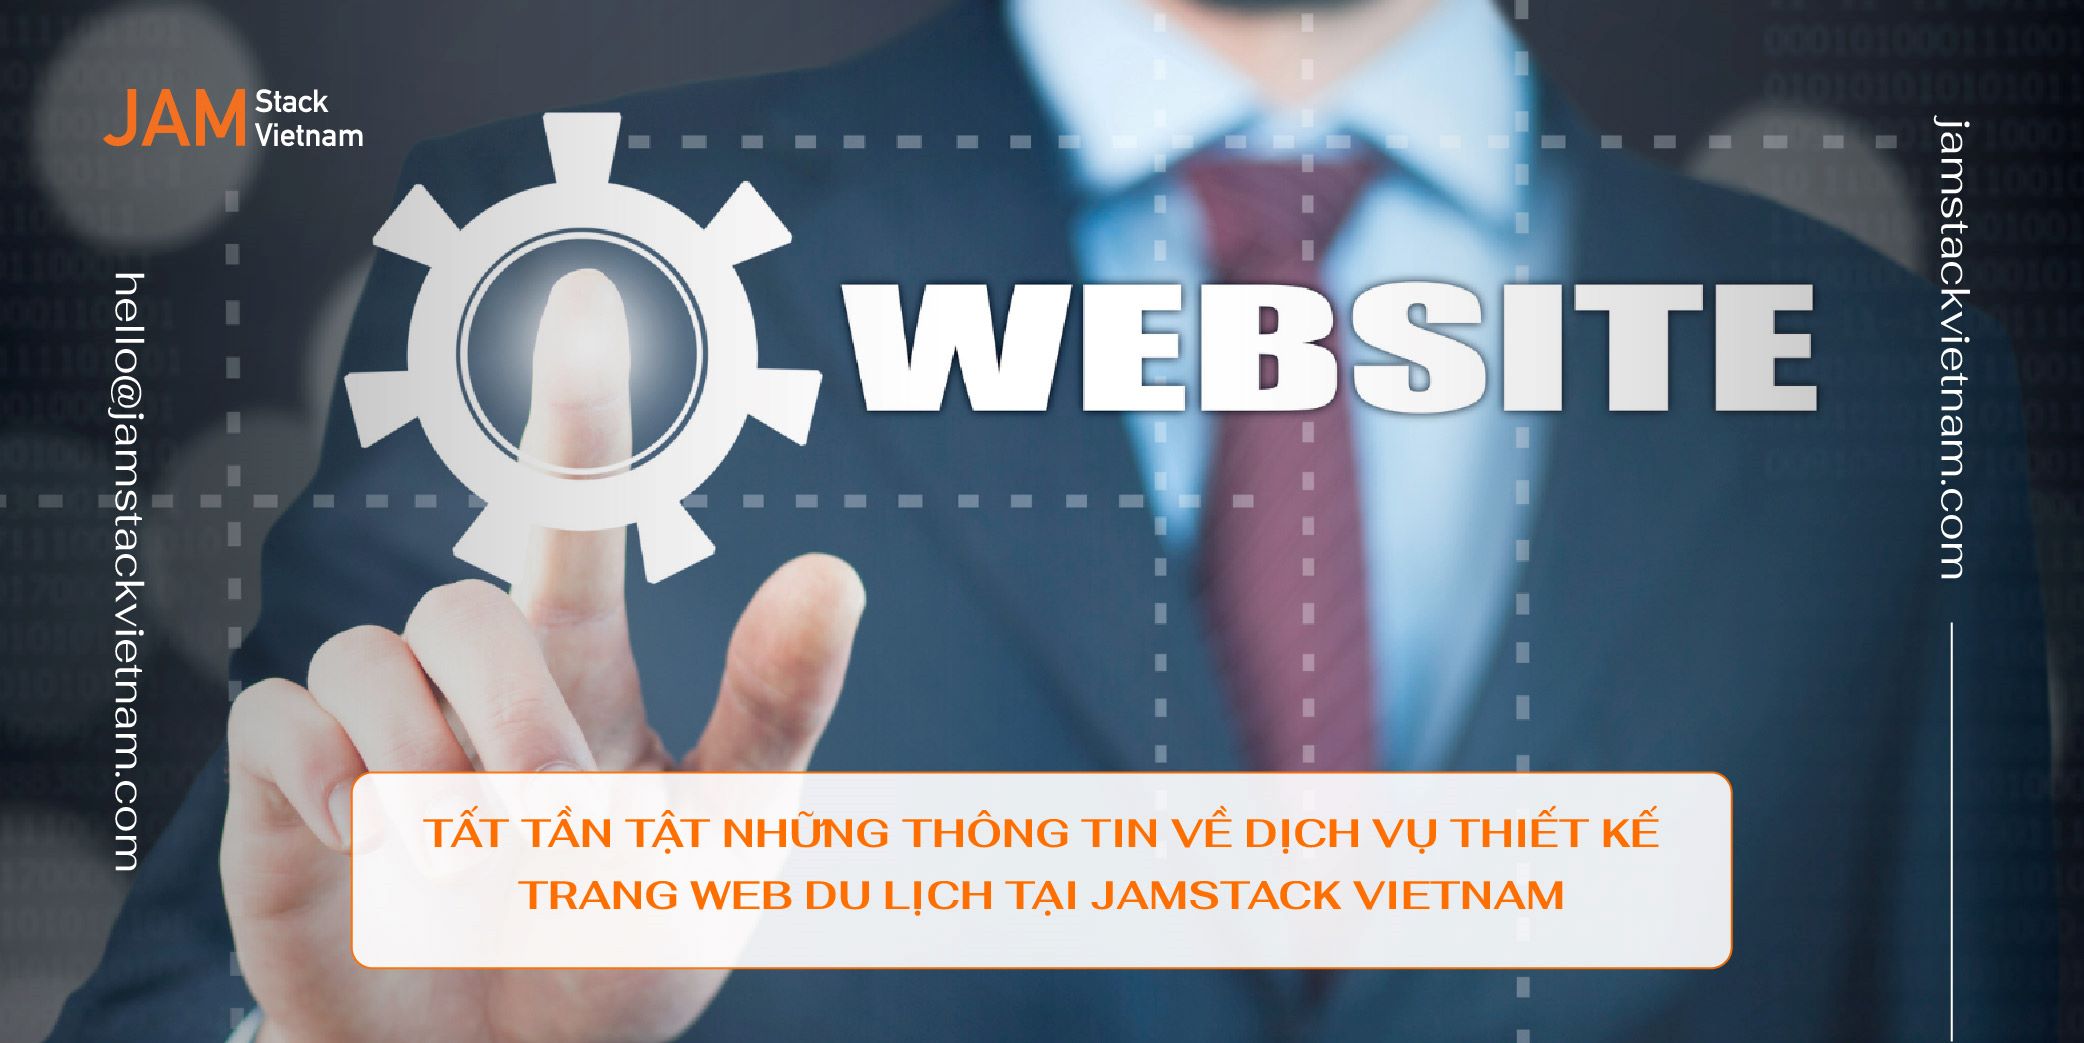 Tất tần tật những thông tin về dịch vụ thiết kế trang web du lịch tại JAMstack Vietnam